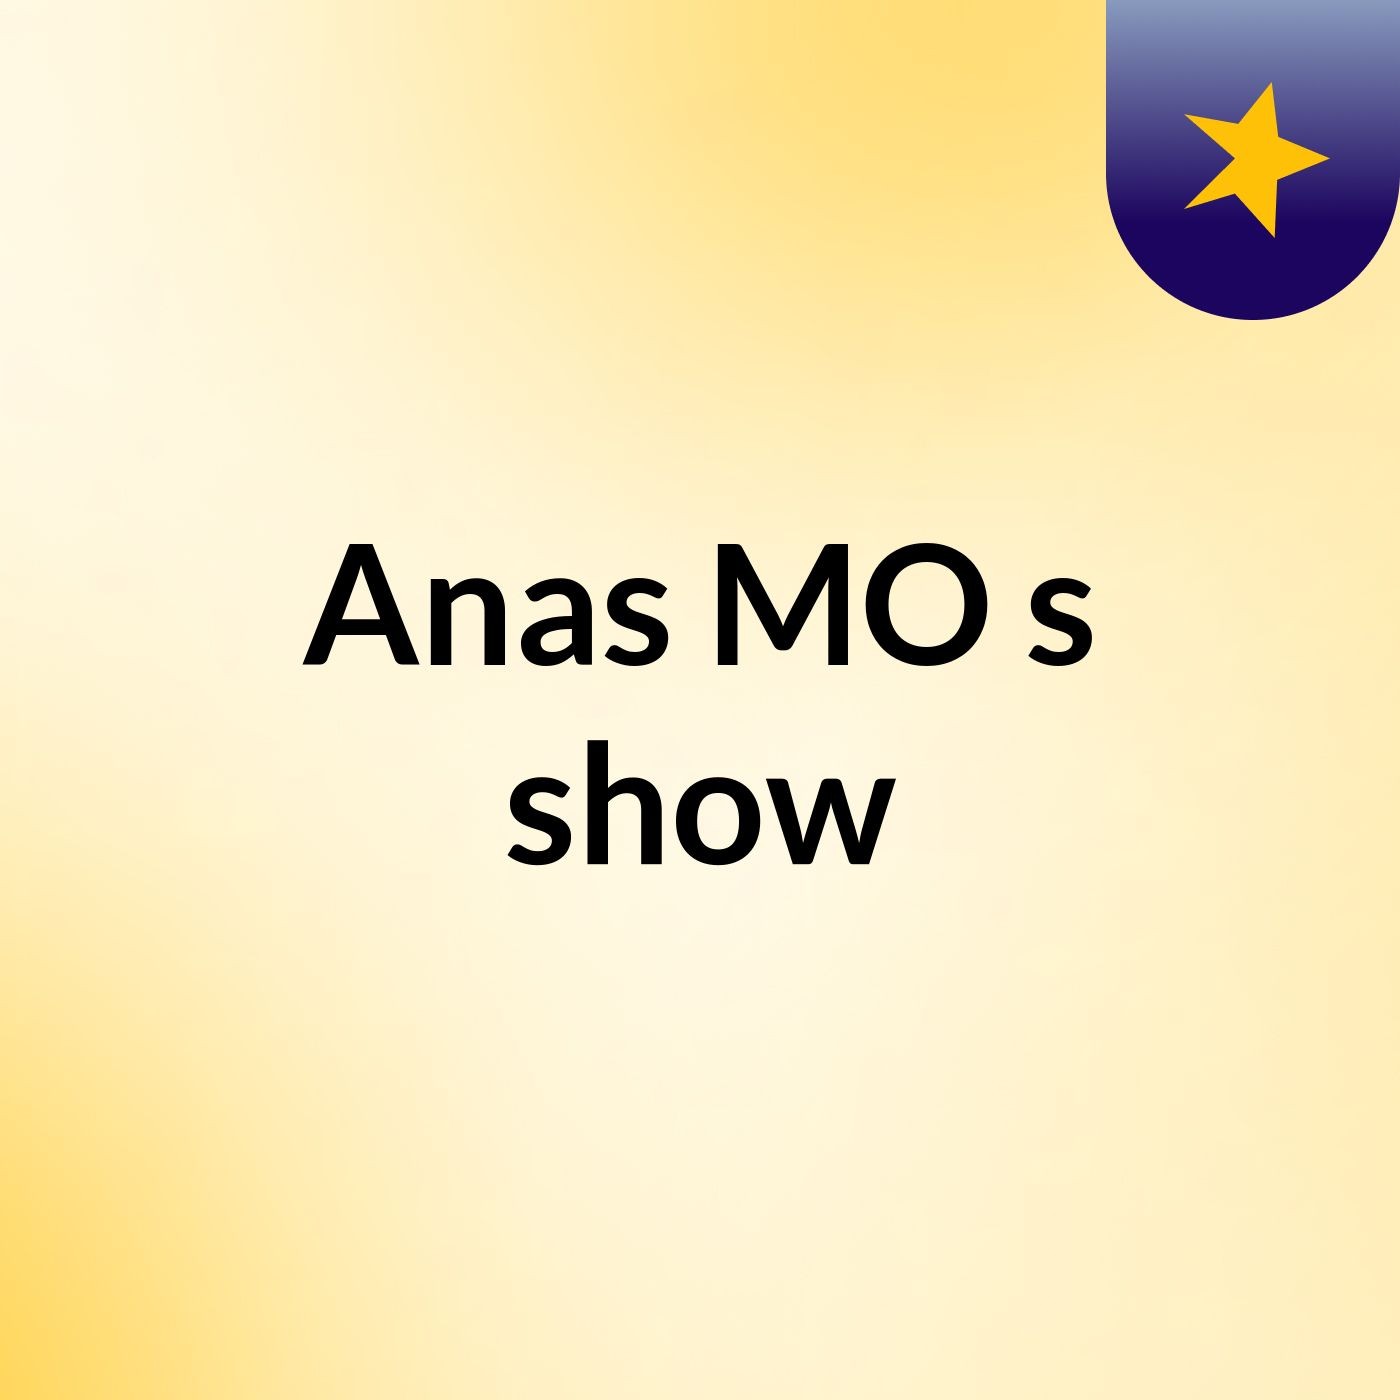 Anas MO's show